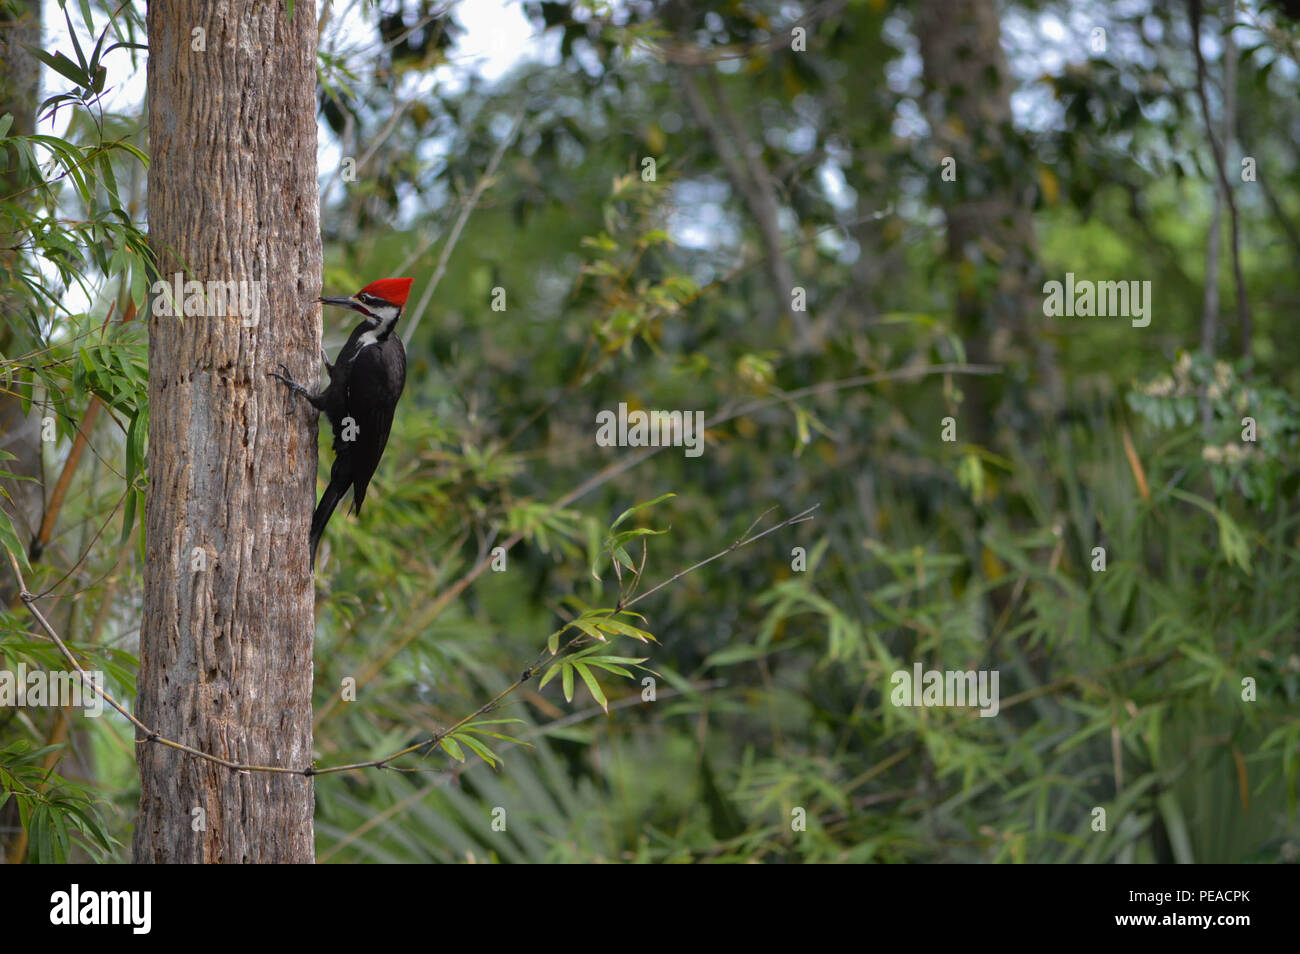 Patio exterior Ornitología Aves Silvestres Naturaleza Florida Fotografía Ver perfil lateral Pileated Woodpecker carpintero común más grande de América del Norte Foto de stock